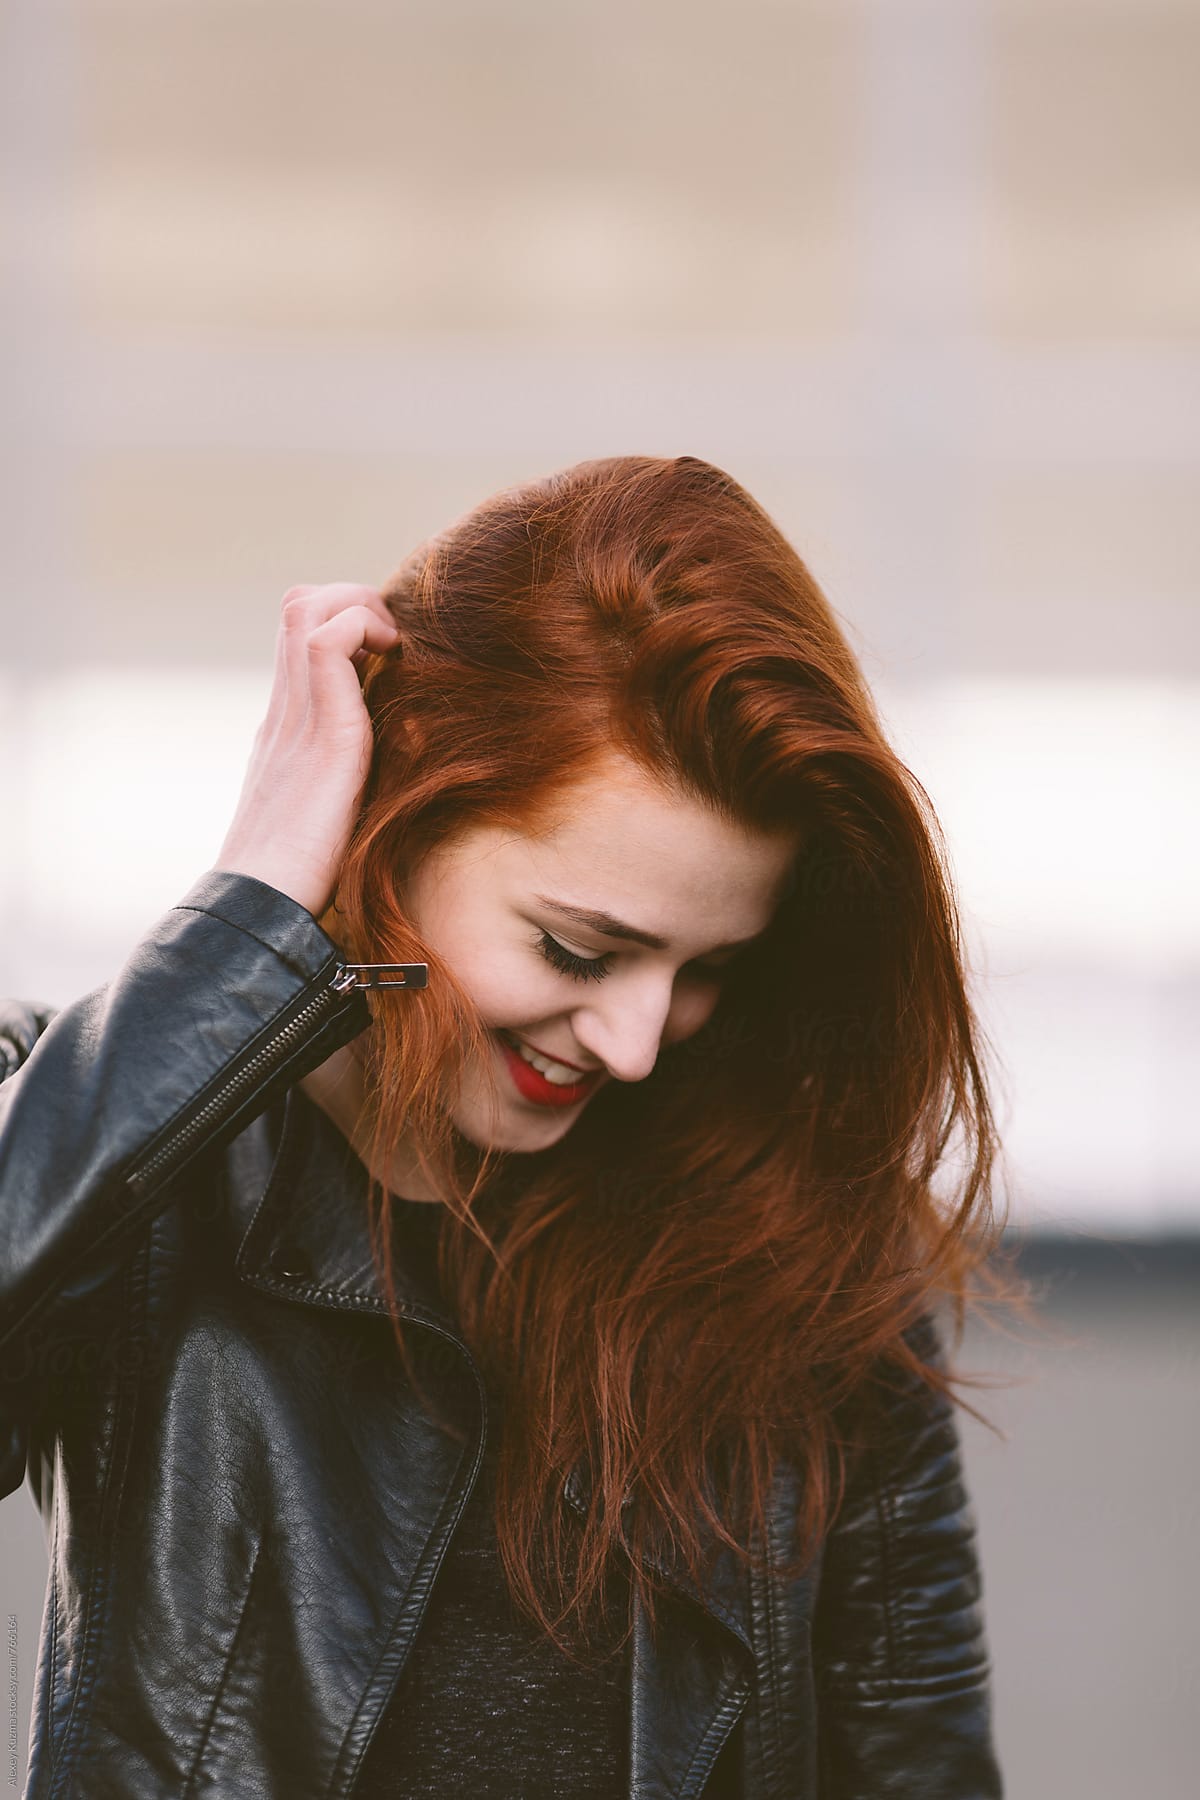 Ver Happy Young Woman With Red Hair Del Colaborador De Stocksy